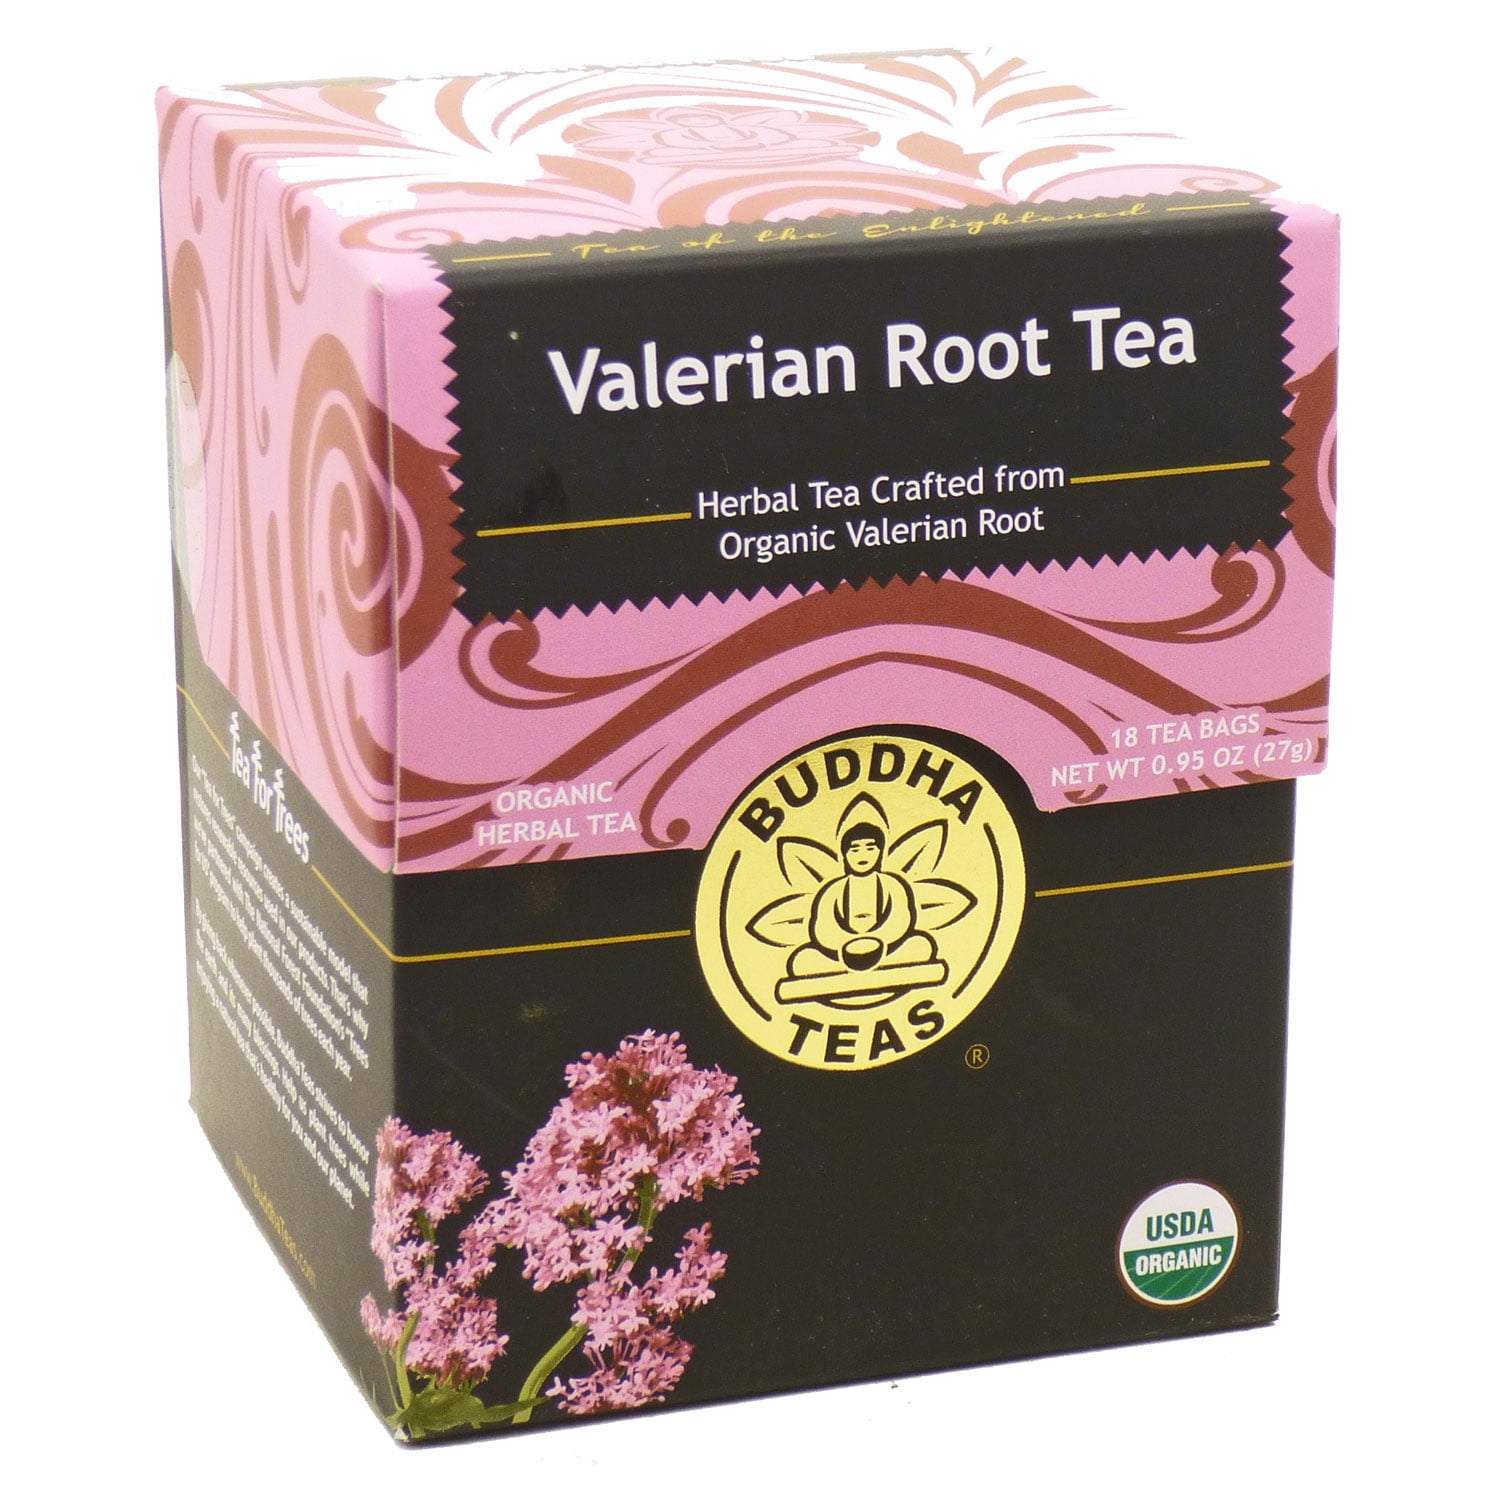 2. Benefits of Valerian Root Tea